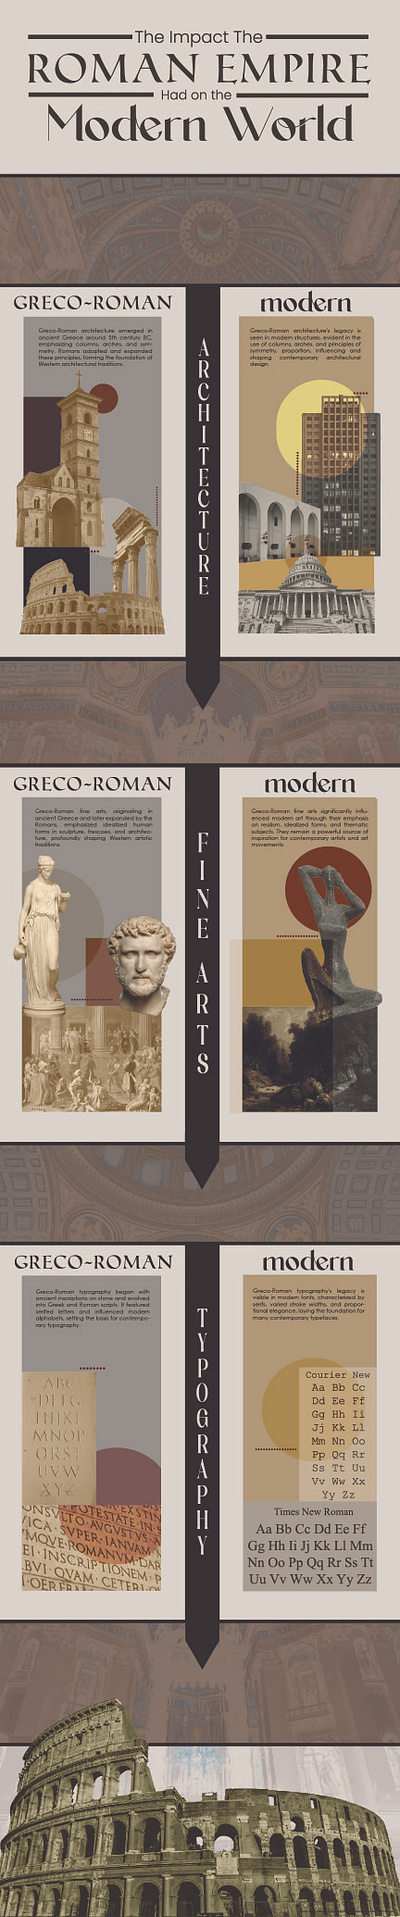 Roman Empire Infographic architecture art design graphic design infographic photography